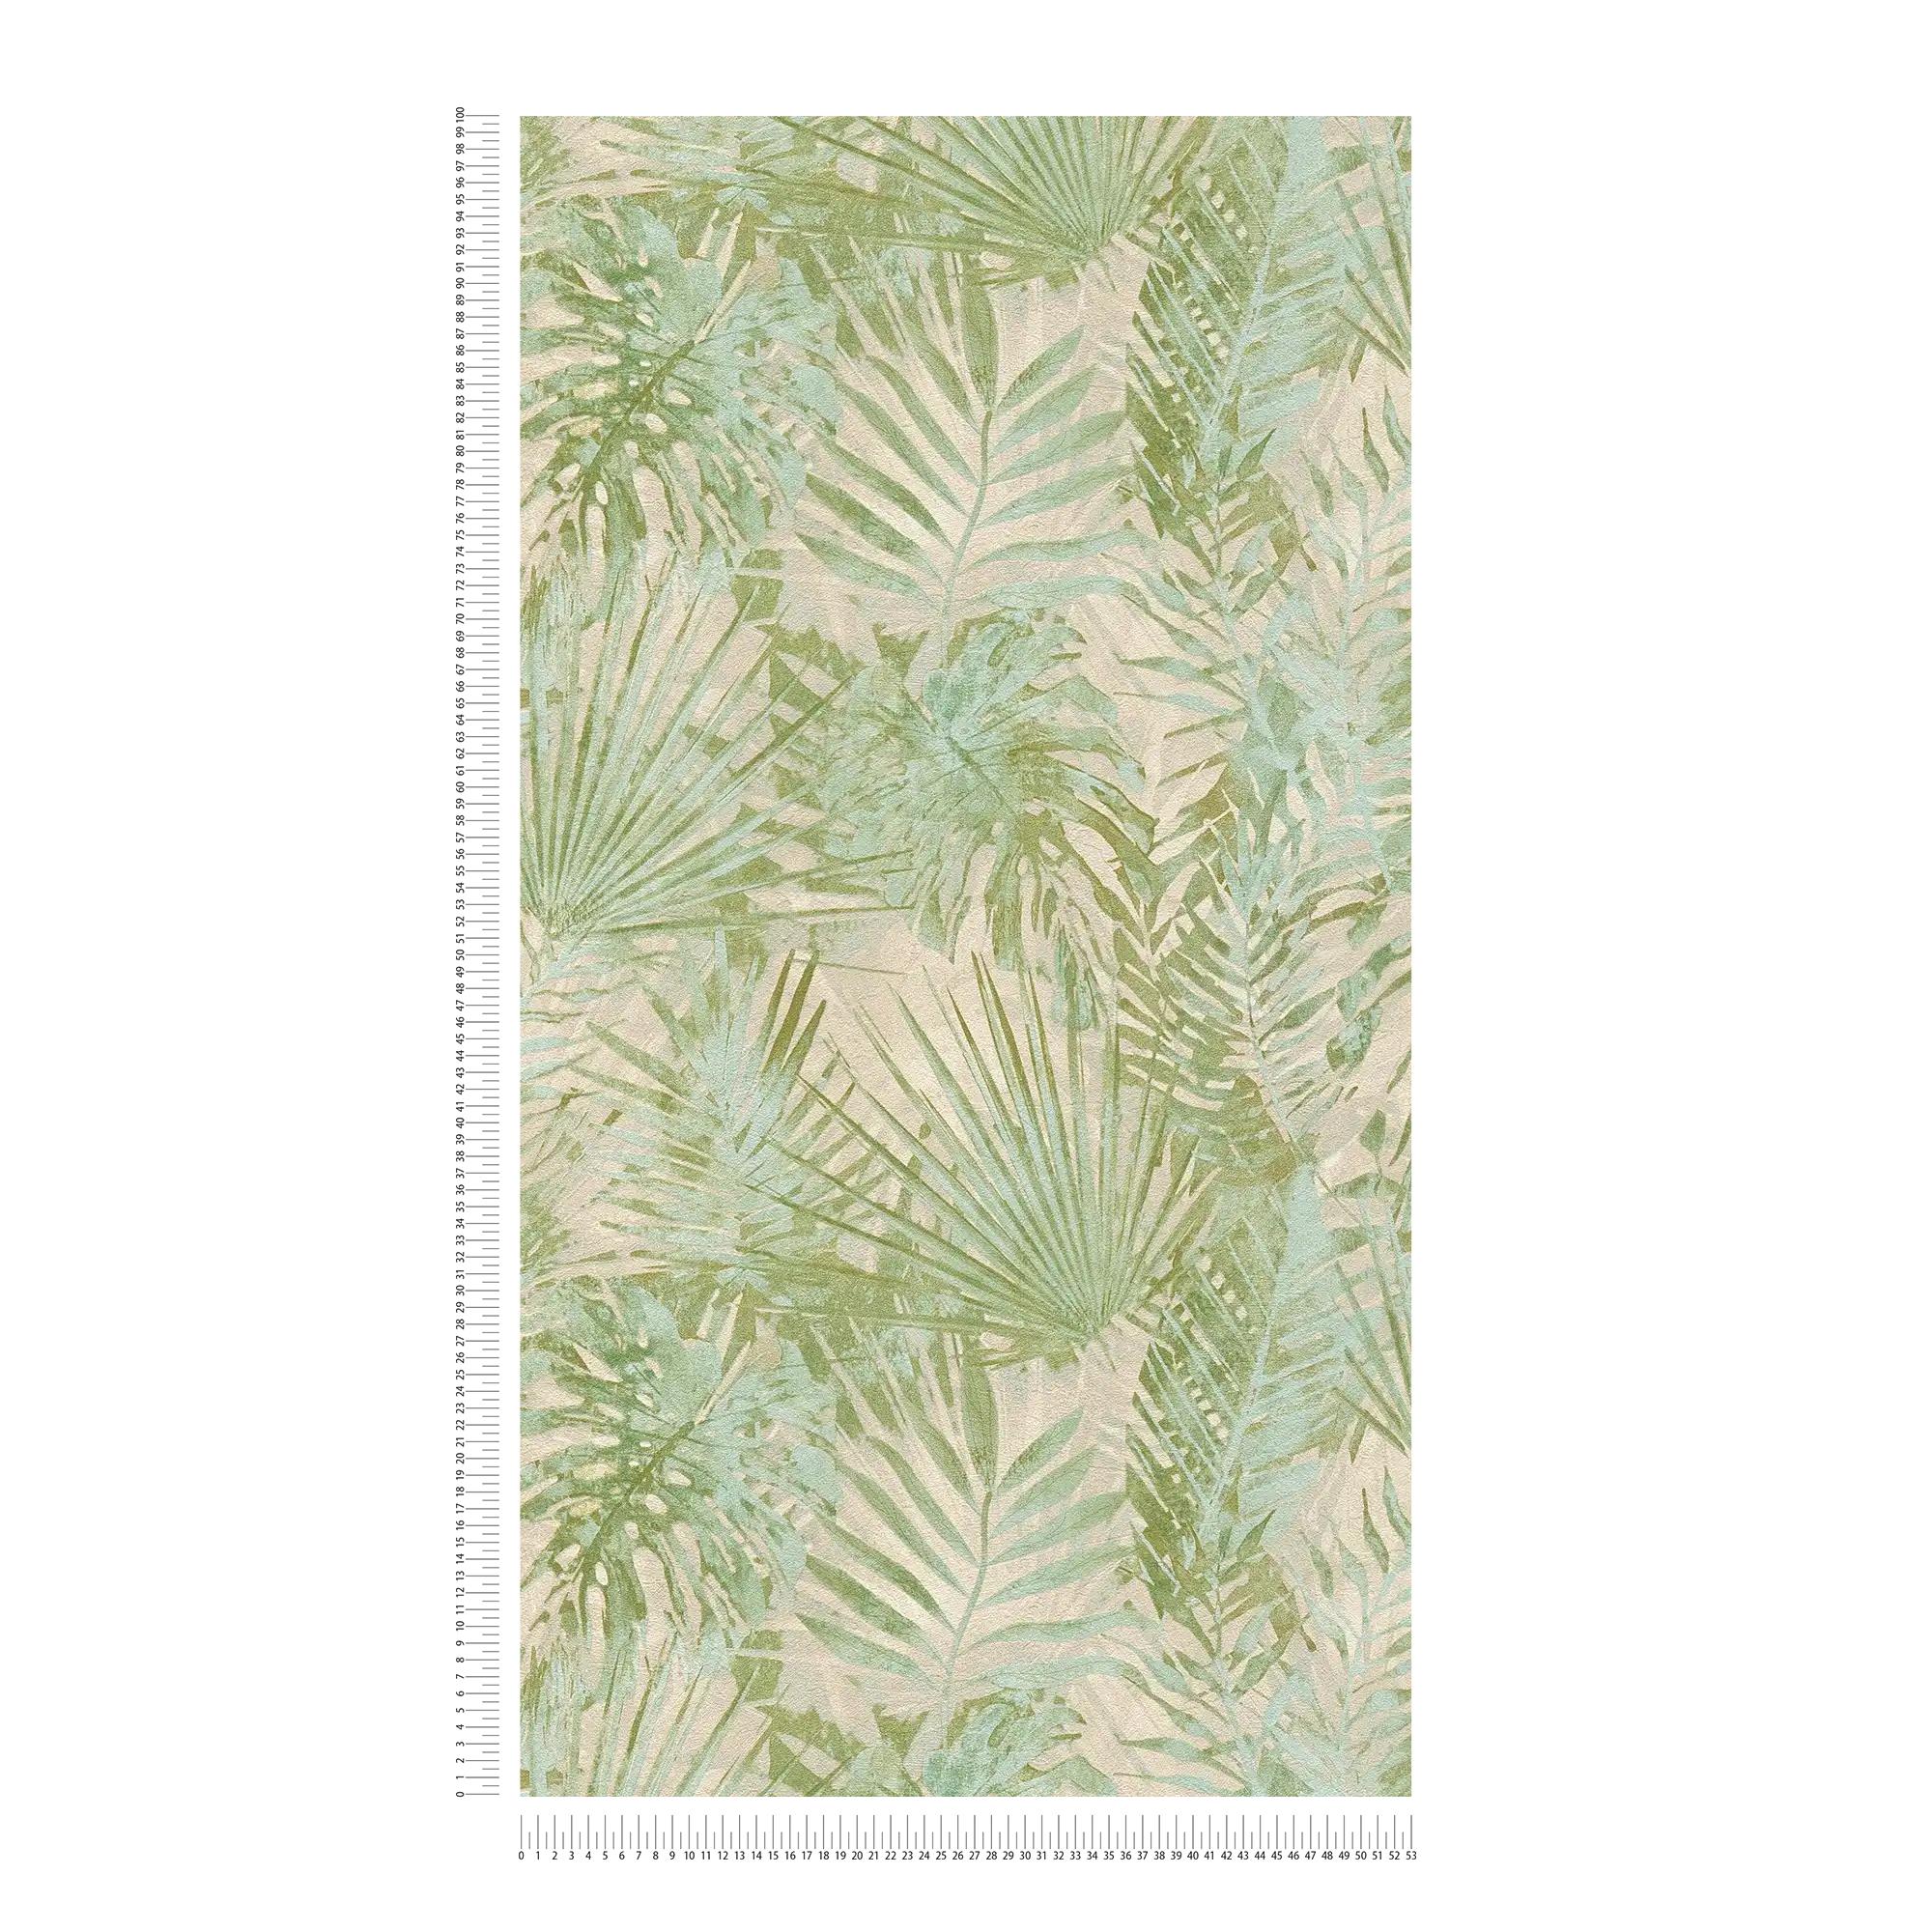             Papel pintado no tejido con hojas de jungla sin PVC - verde, beige
        